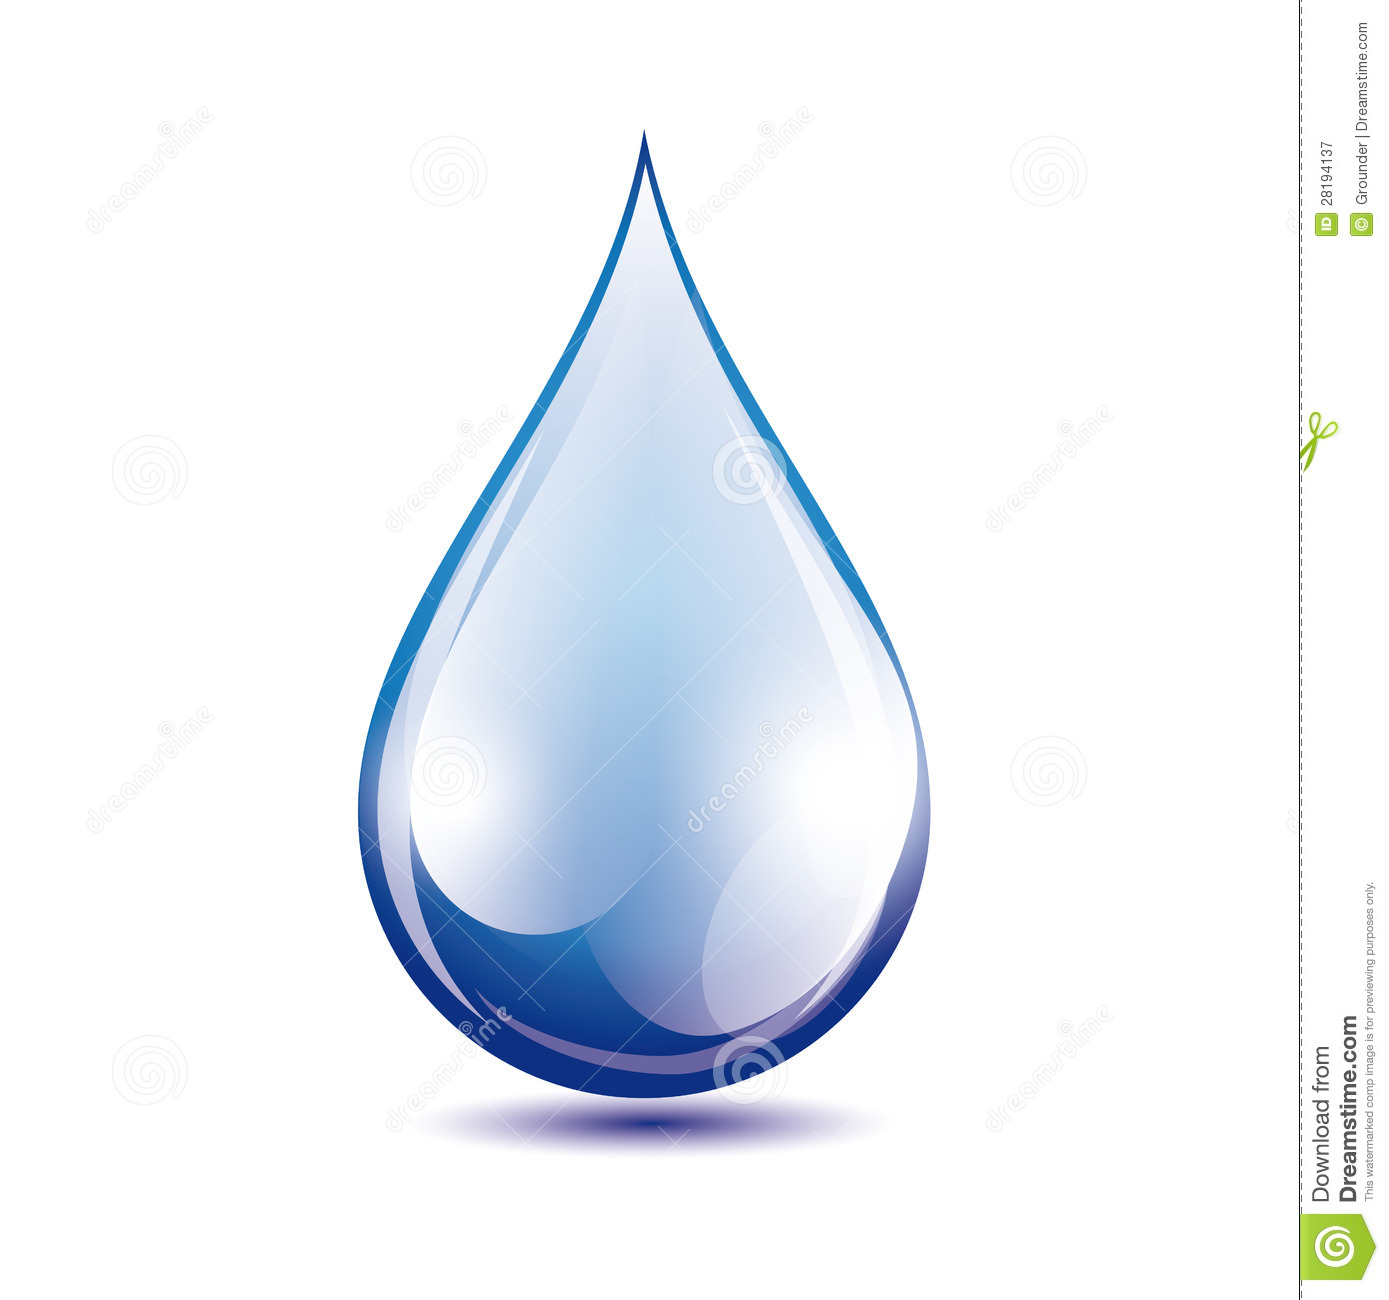 12 Water Drop Vector Images